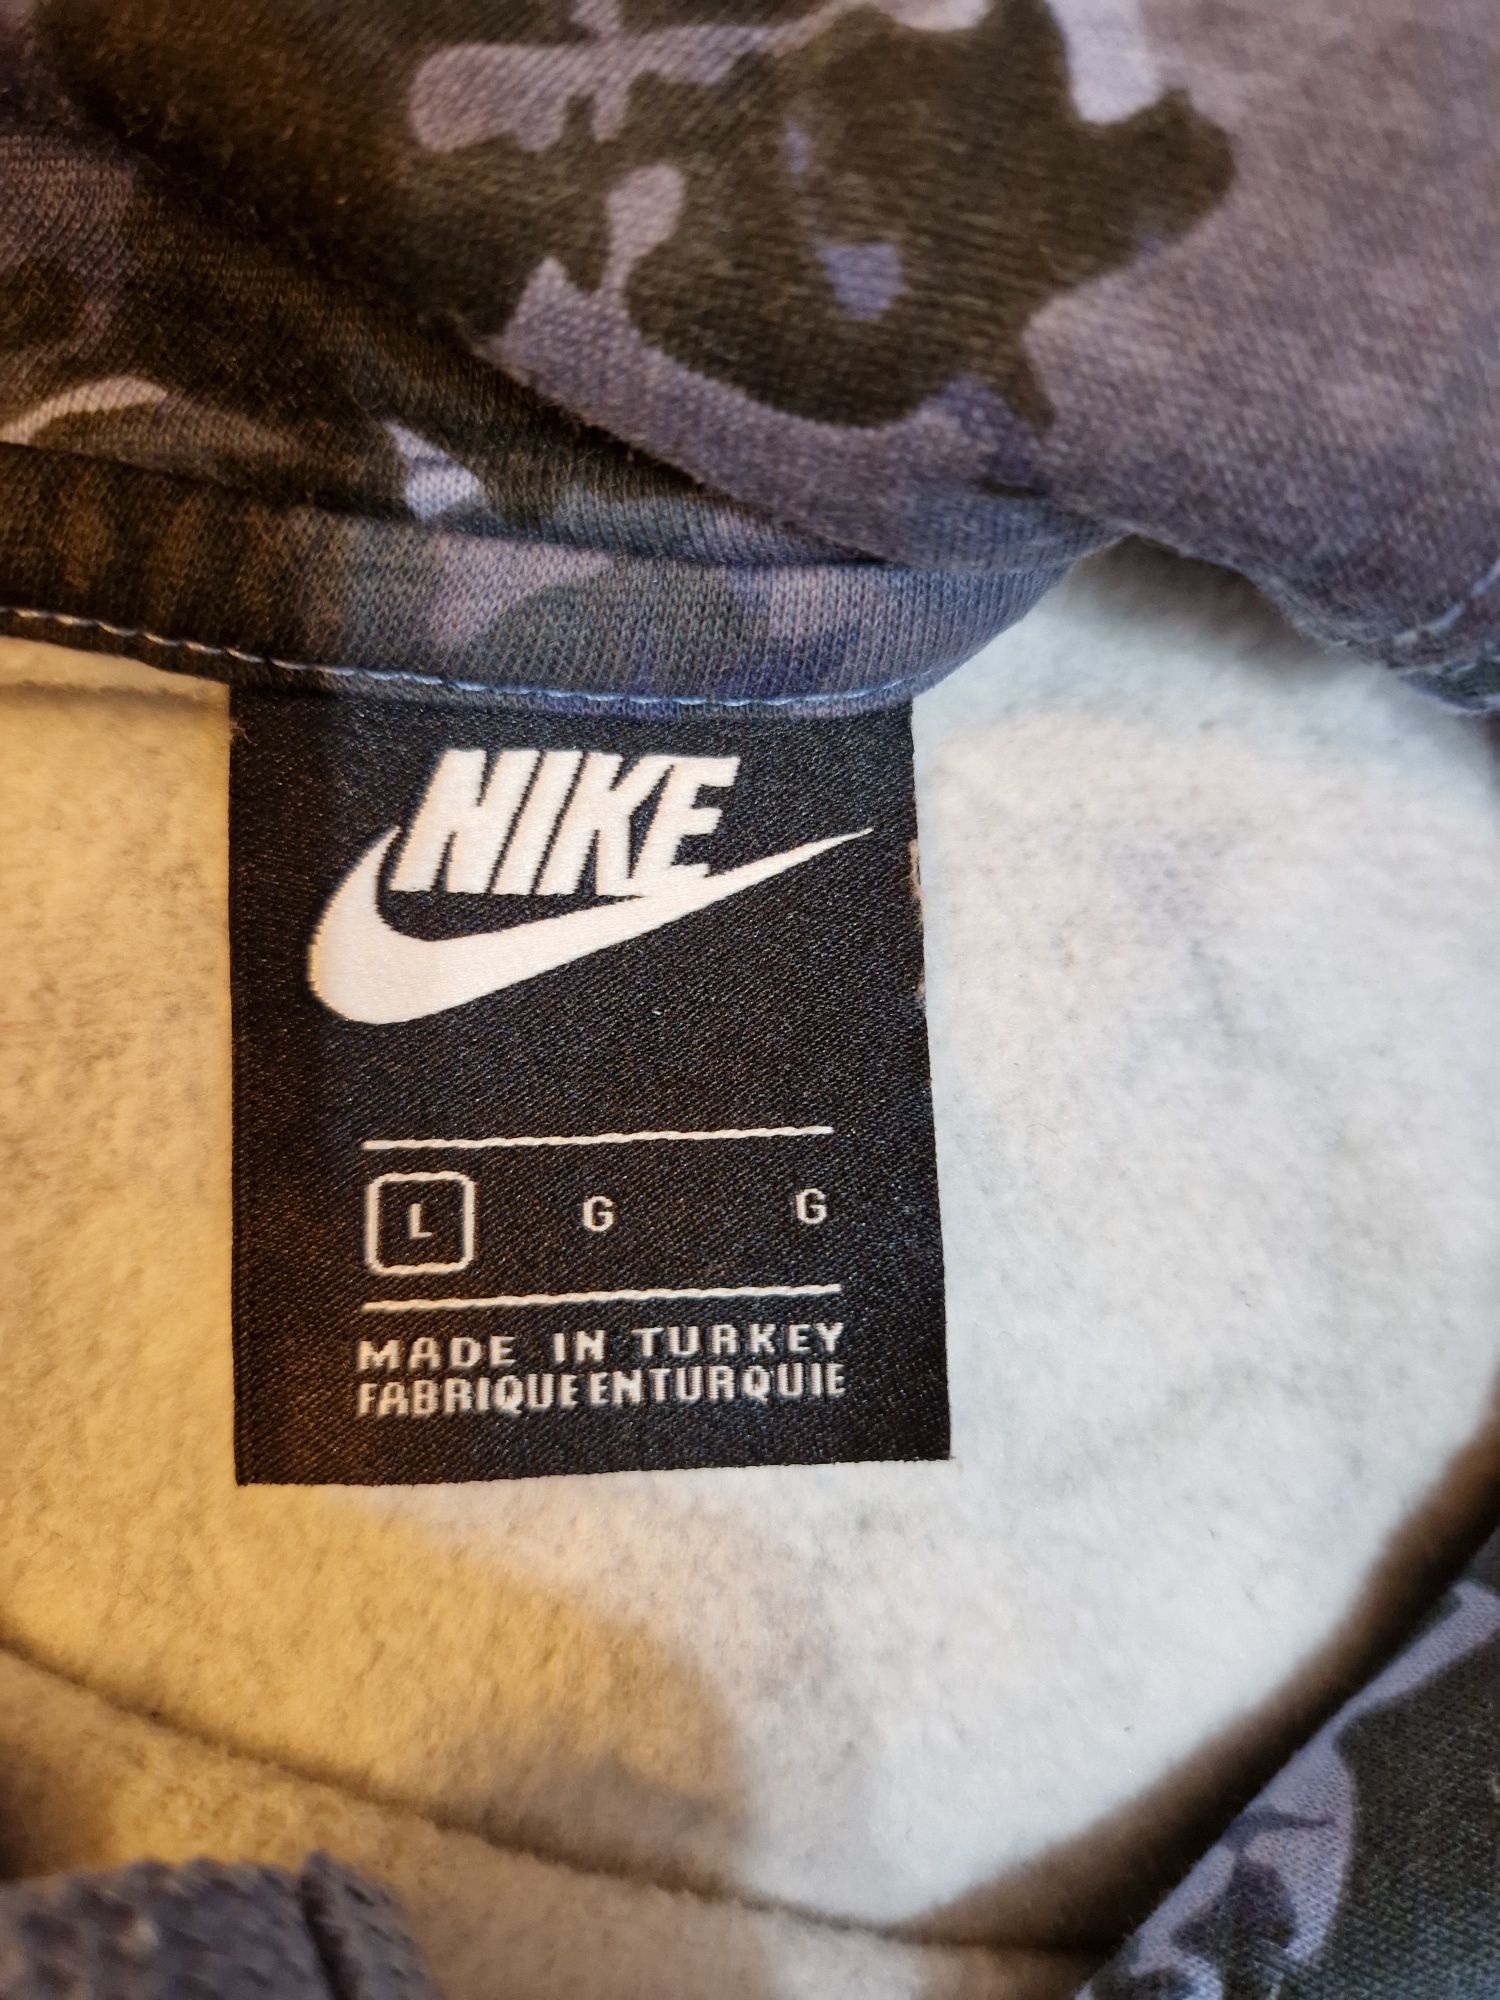 Bluza Nike L jak nowa